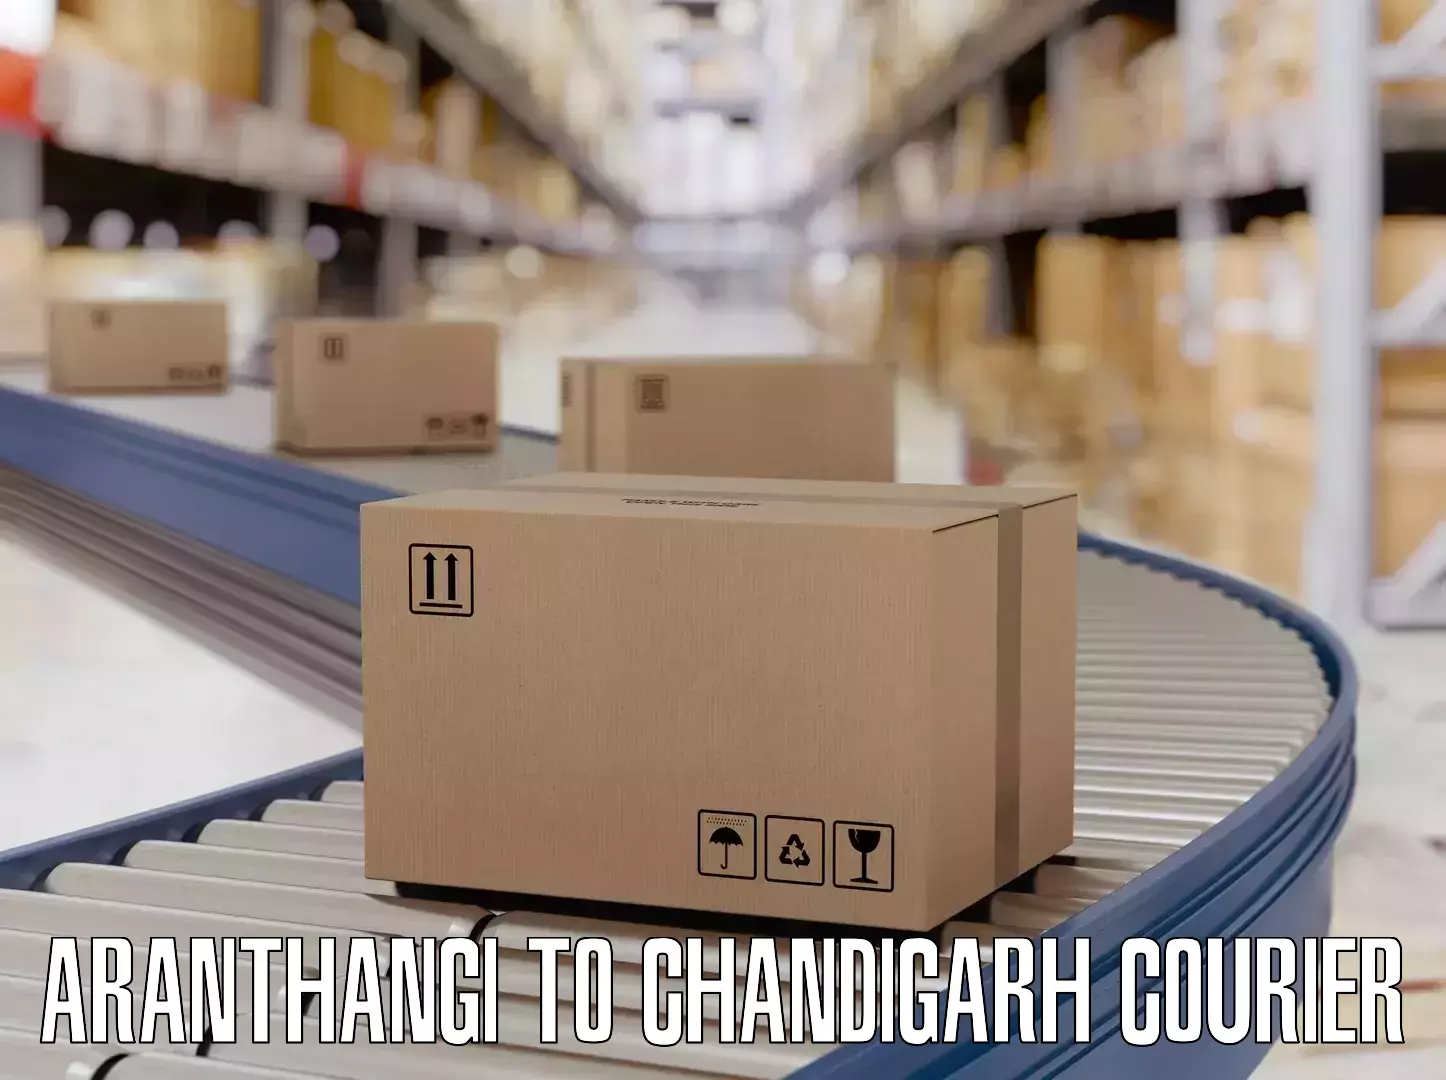 Baggage transport scheduler Aranthangi to Chandigarh